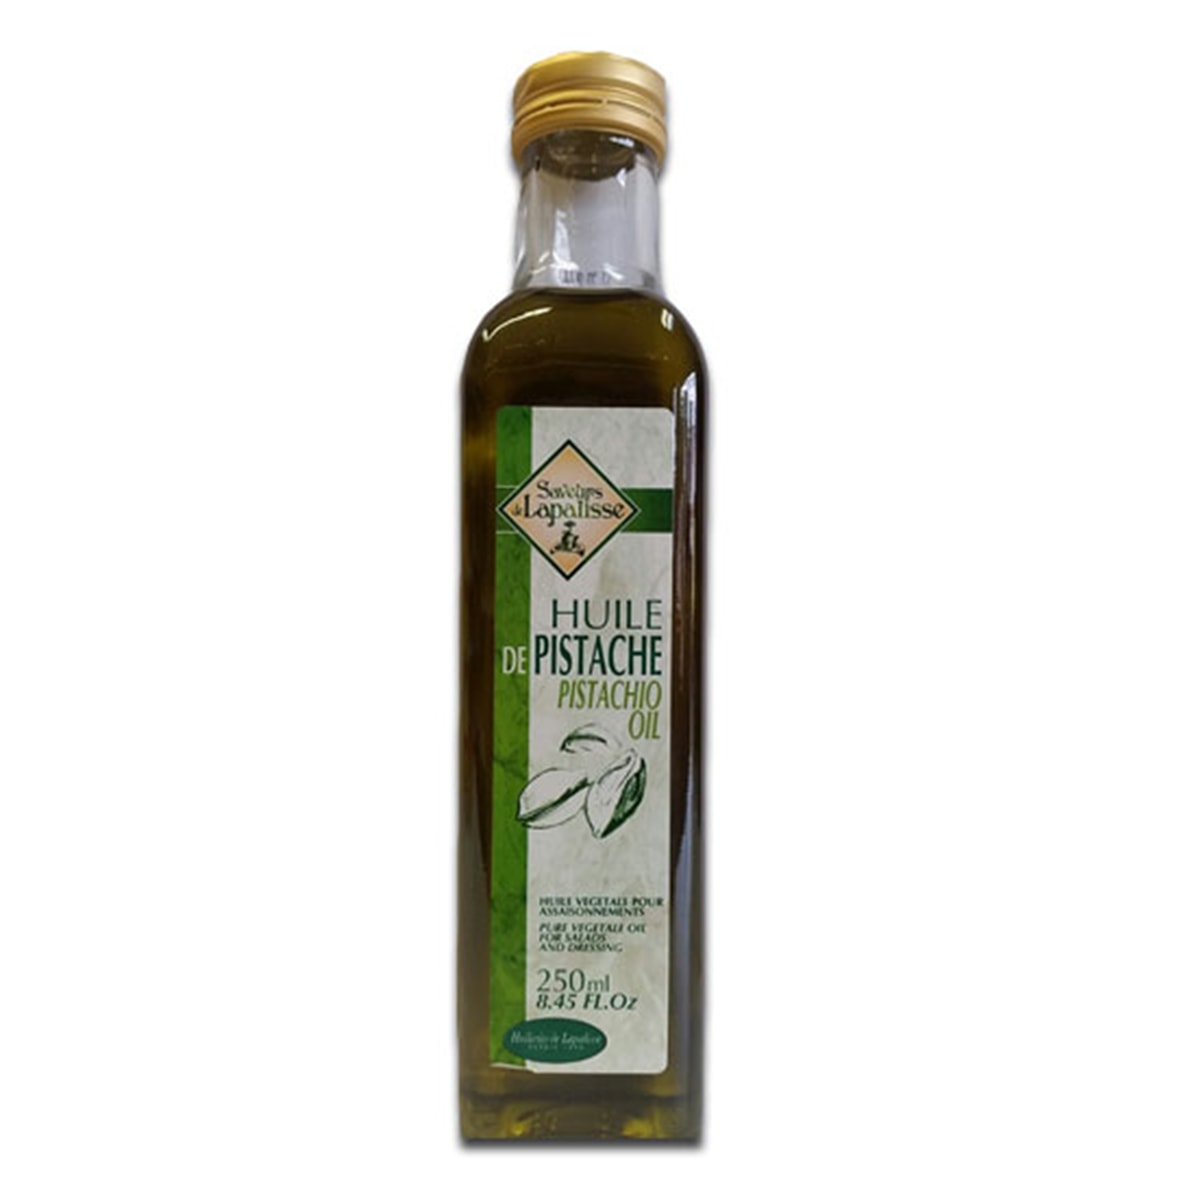 Buy Saveurs De Lapalisse Huile De Pistache (100% Pure Pistachio Oil) - 250 ml